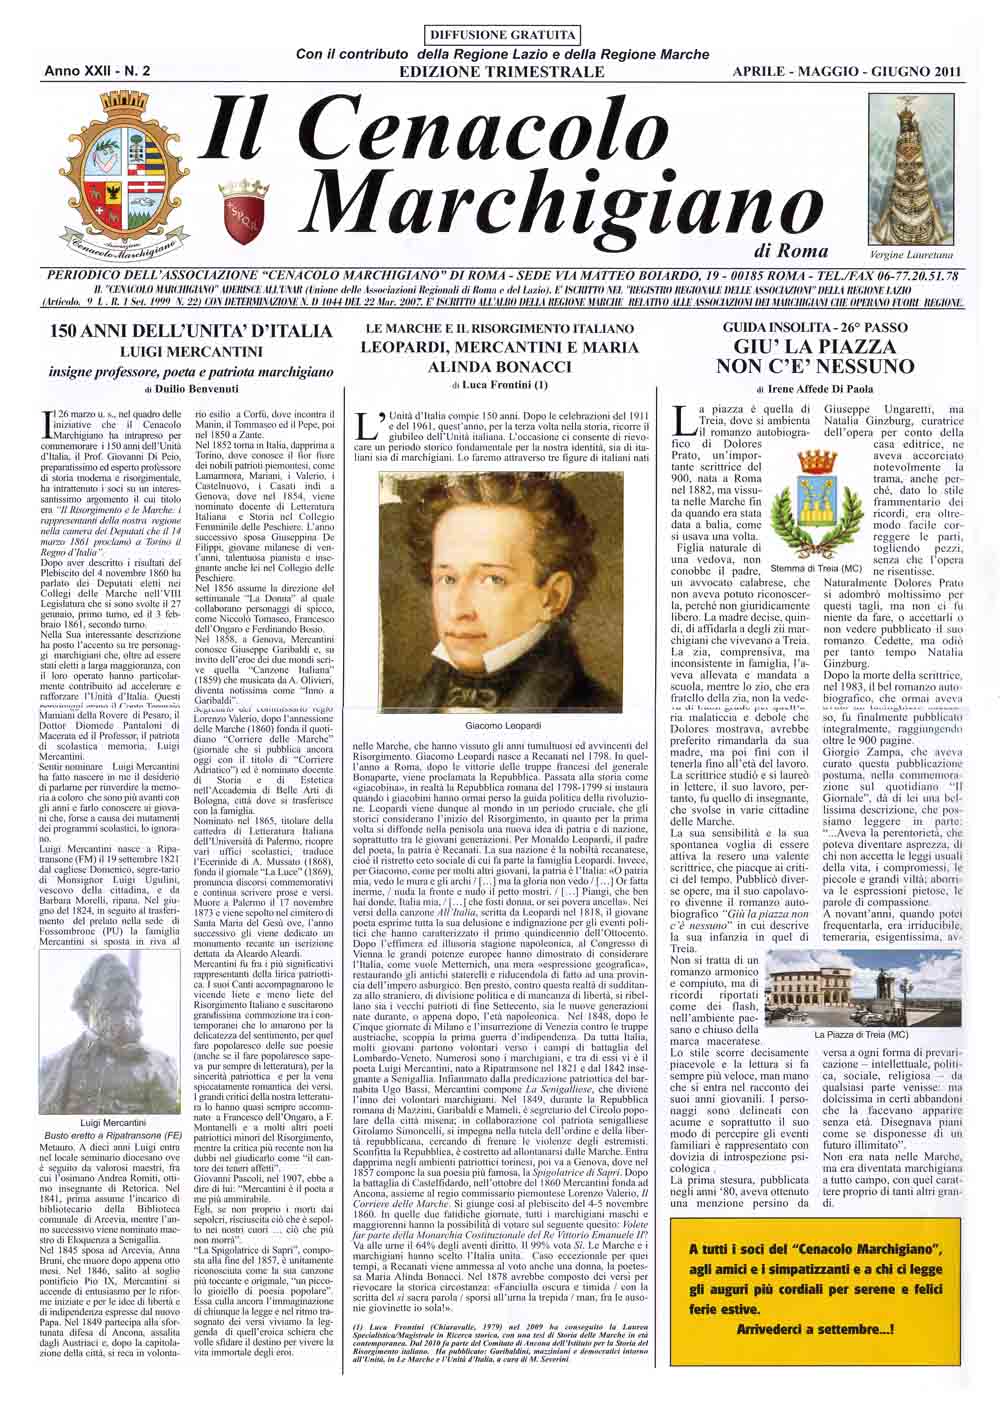 Il giornale trimestrale - Il Cenacolo Marchigiano